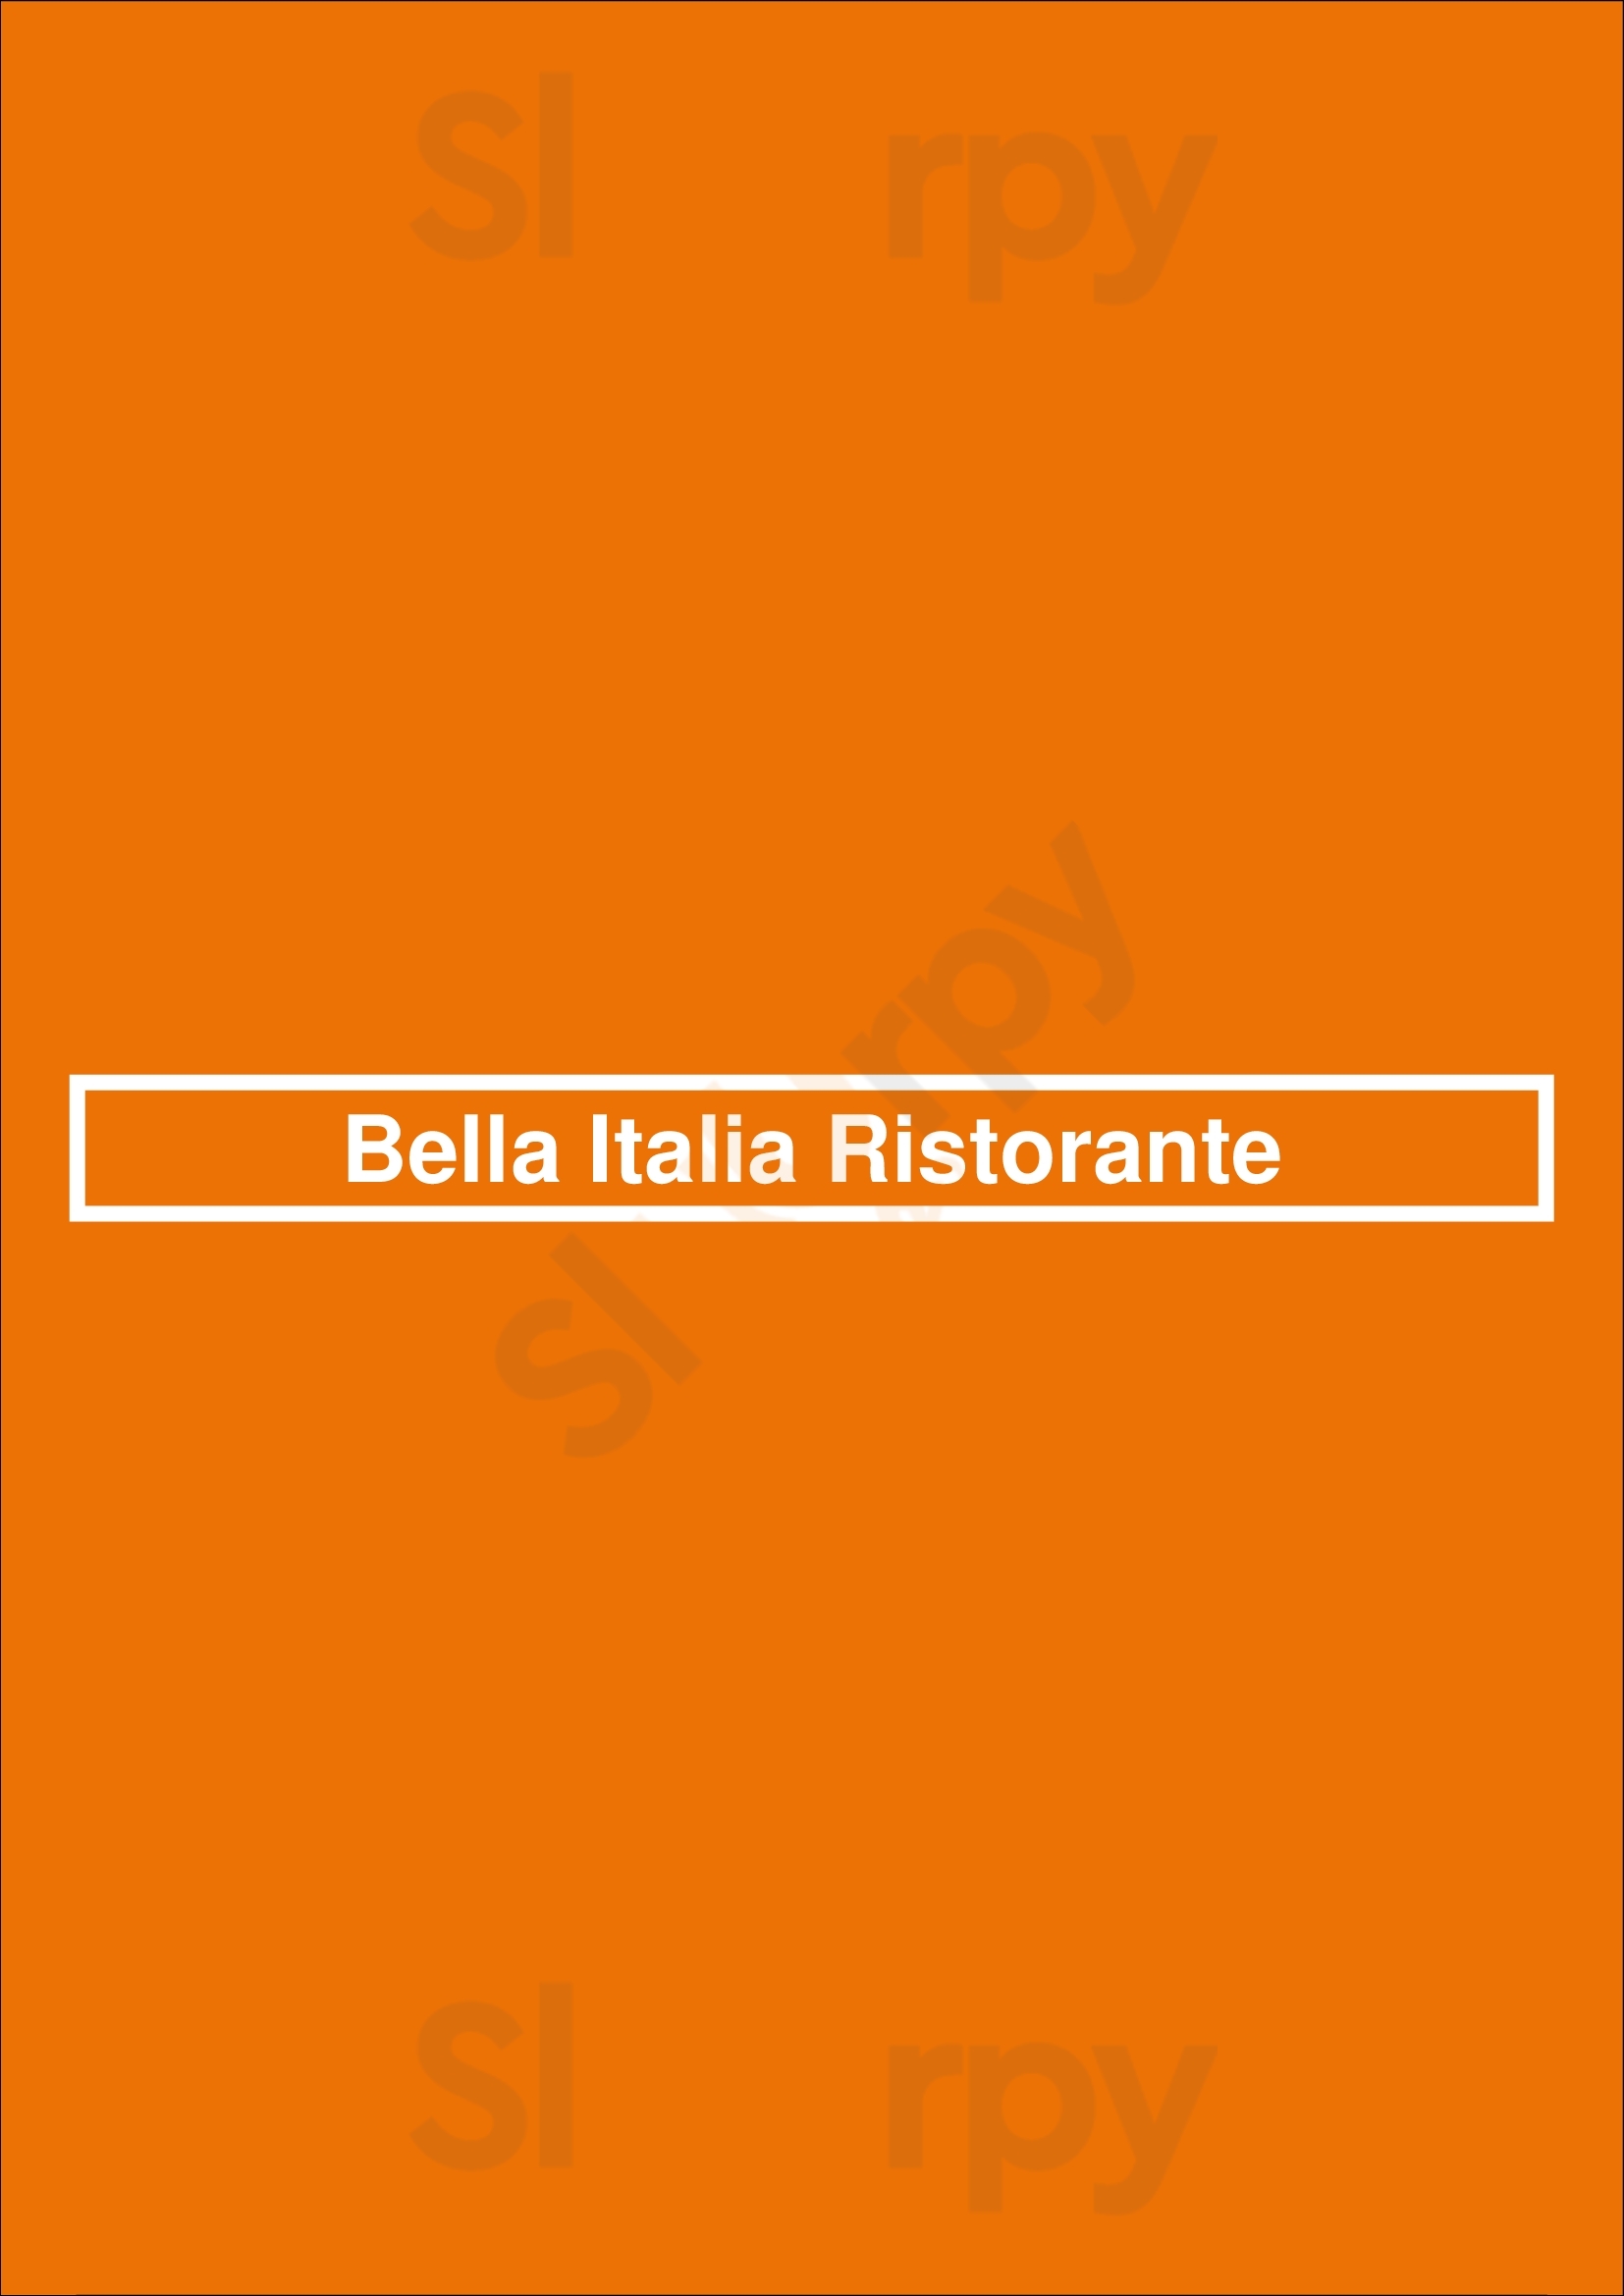 Bella Italia Ristorante Bruges Menu - 1